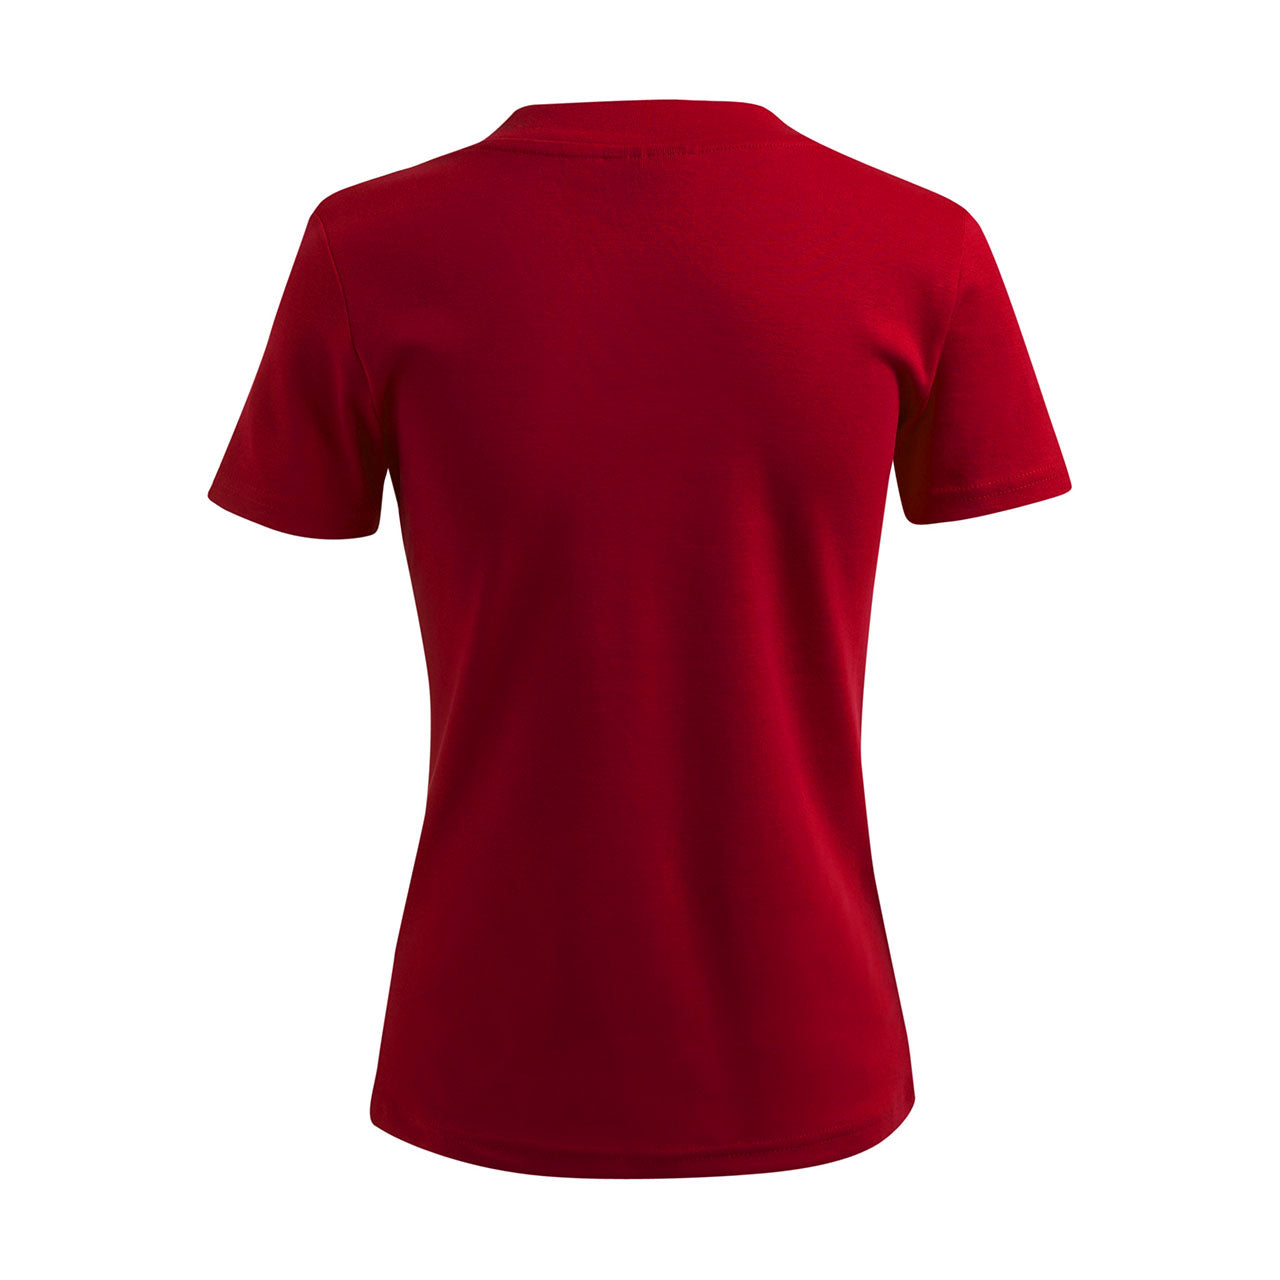 Damen T-Shirt mit V-Ausschnitt   - Kölle - Strass